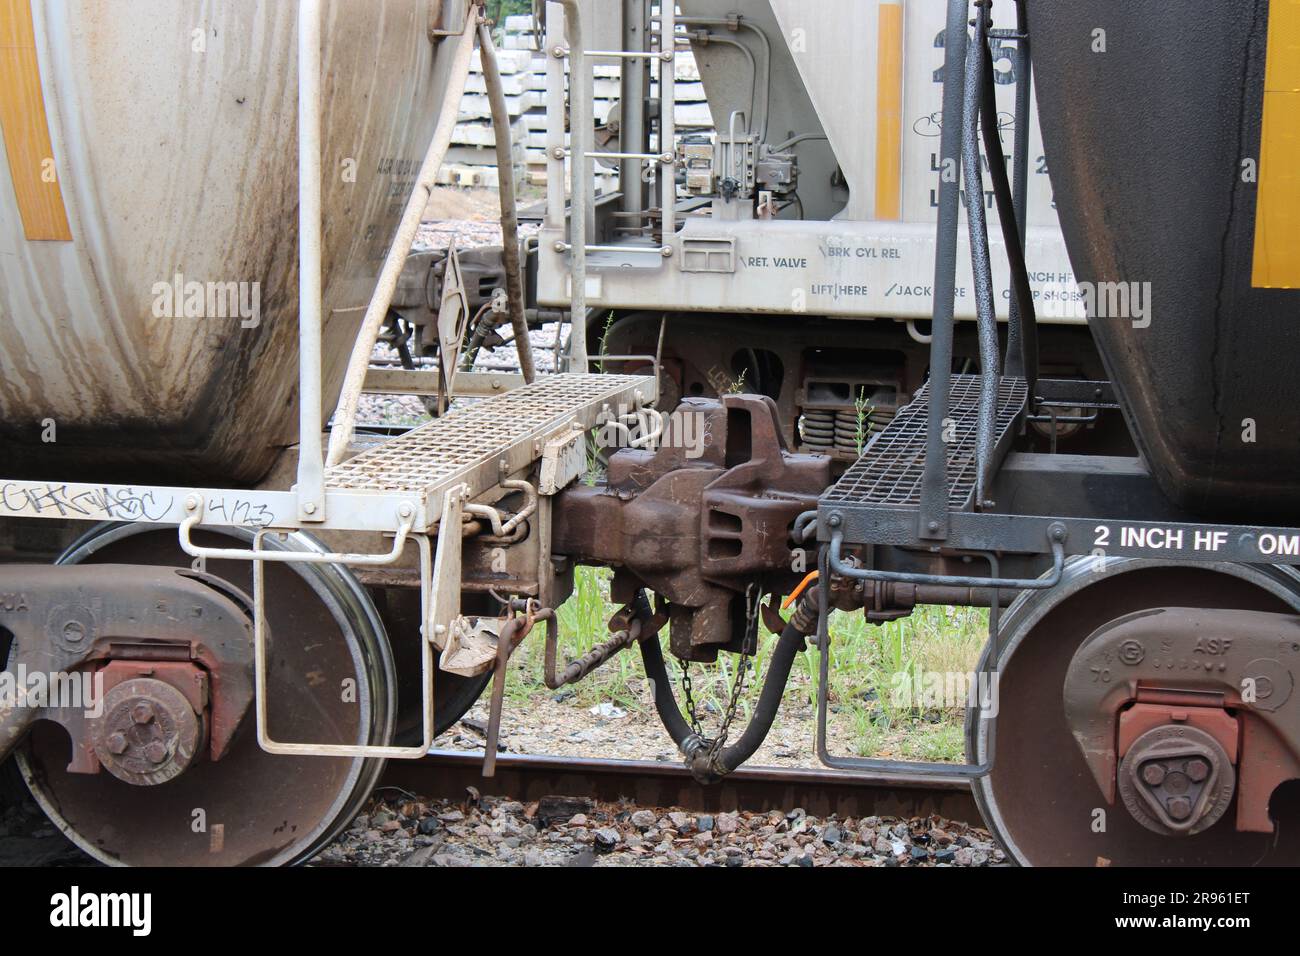 Vettori ferroviari del Nord America, Messico, Stati Uniti e Canada a Dallas Foto Stock